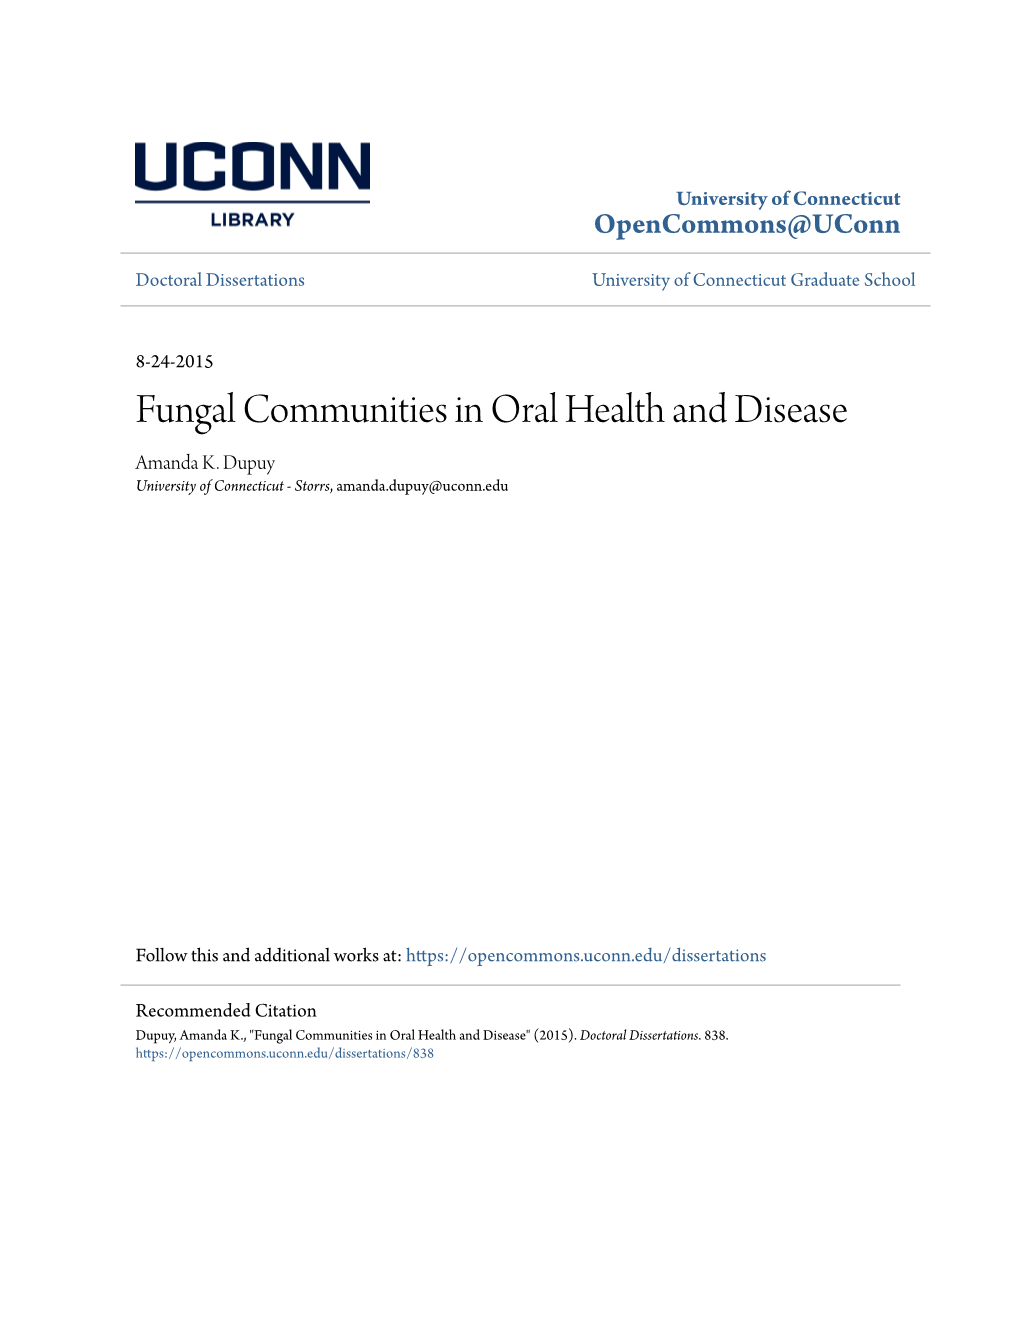 Fungal Communities in Oral Health and Disease Amanda K